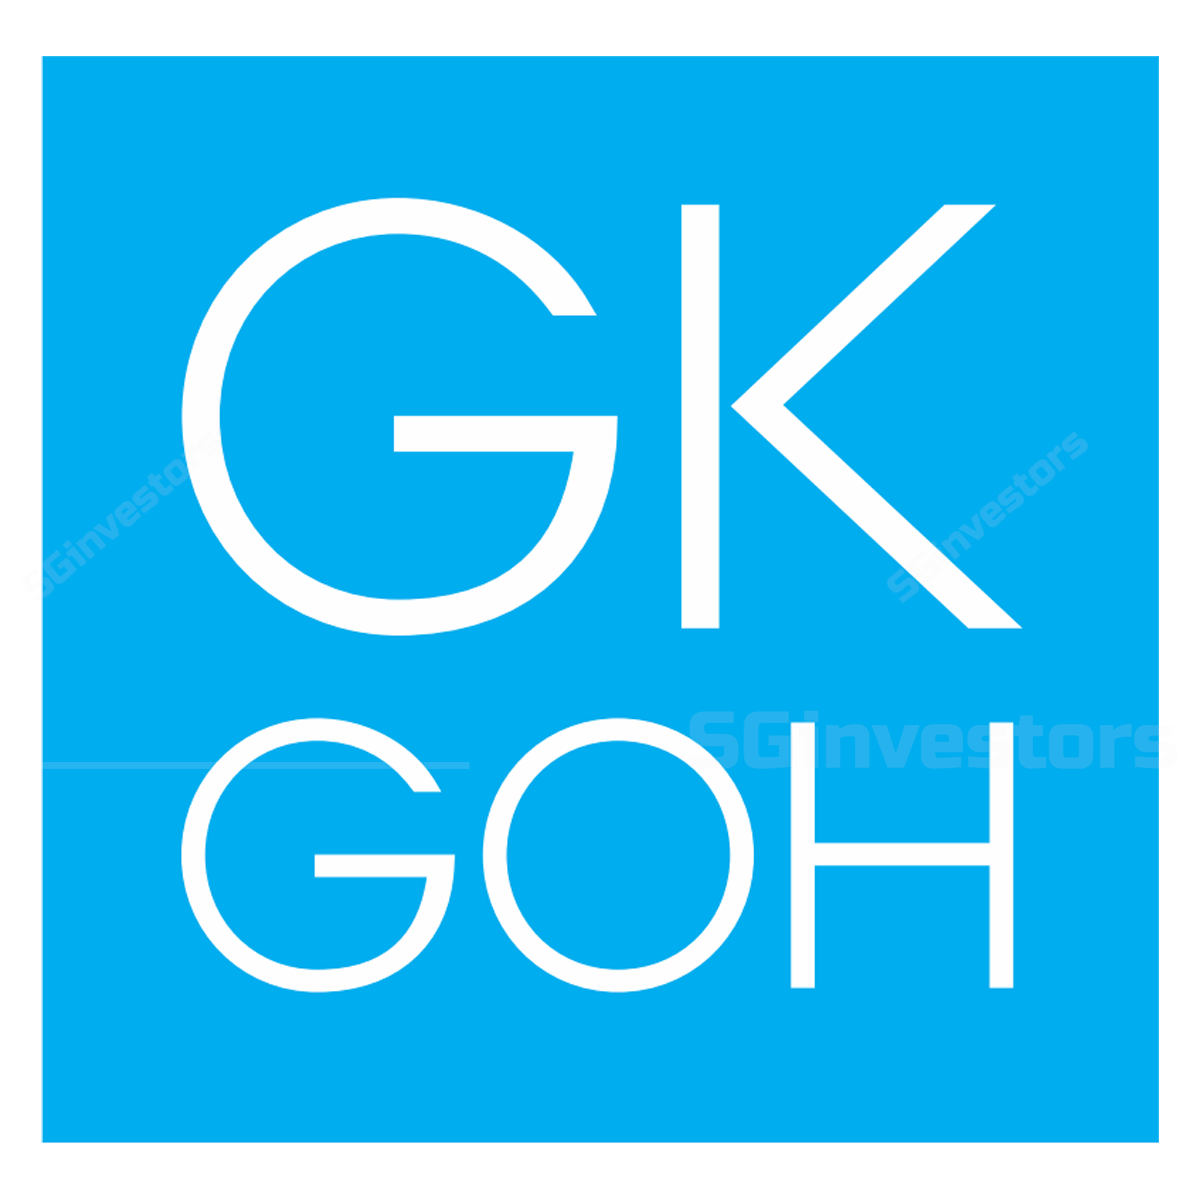 Gk Goh Holding